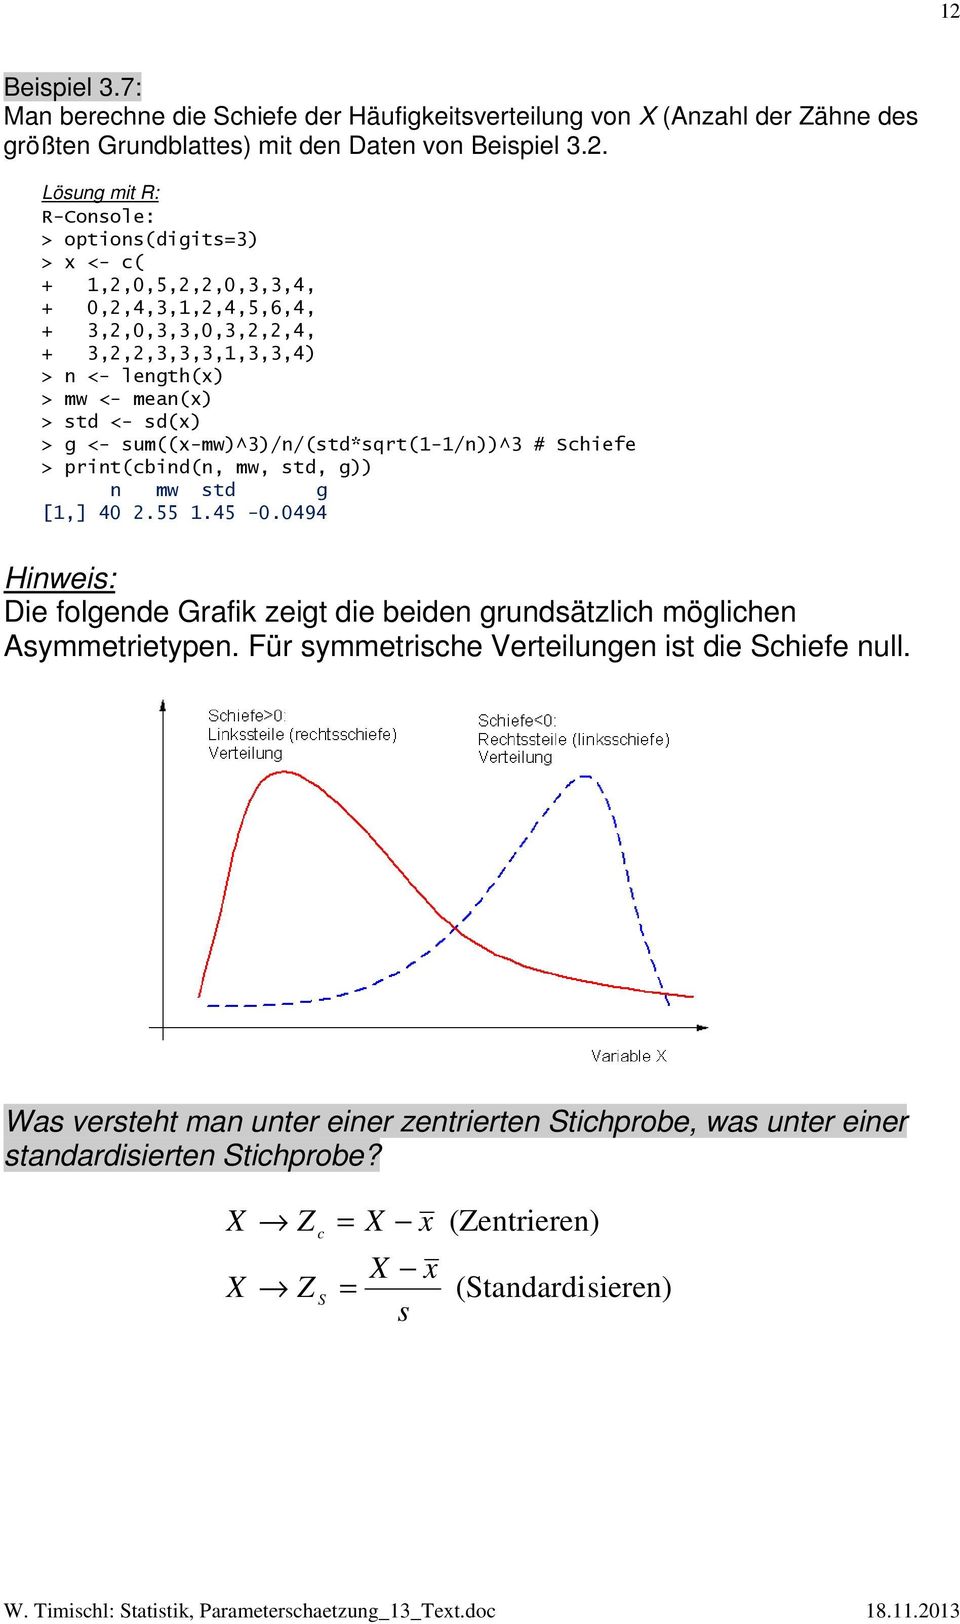 sum((x-mw)^3)//(std*sqrt(1-1/))^3 # Schiefe > prit(cbid(, mw, std, g)) mw std g [1,] 40.55 1.45-0.0494 Hiweis: Die folgede Grafik zeigt die beide grudsätzlich mögliche Asymmetrietype.